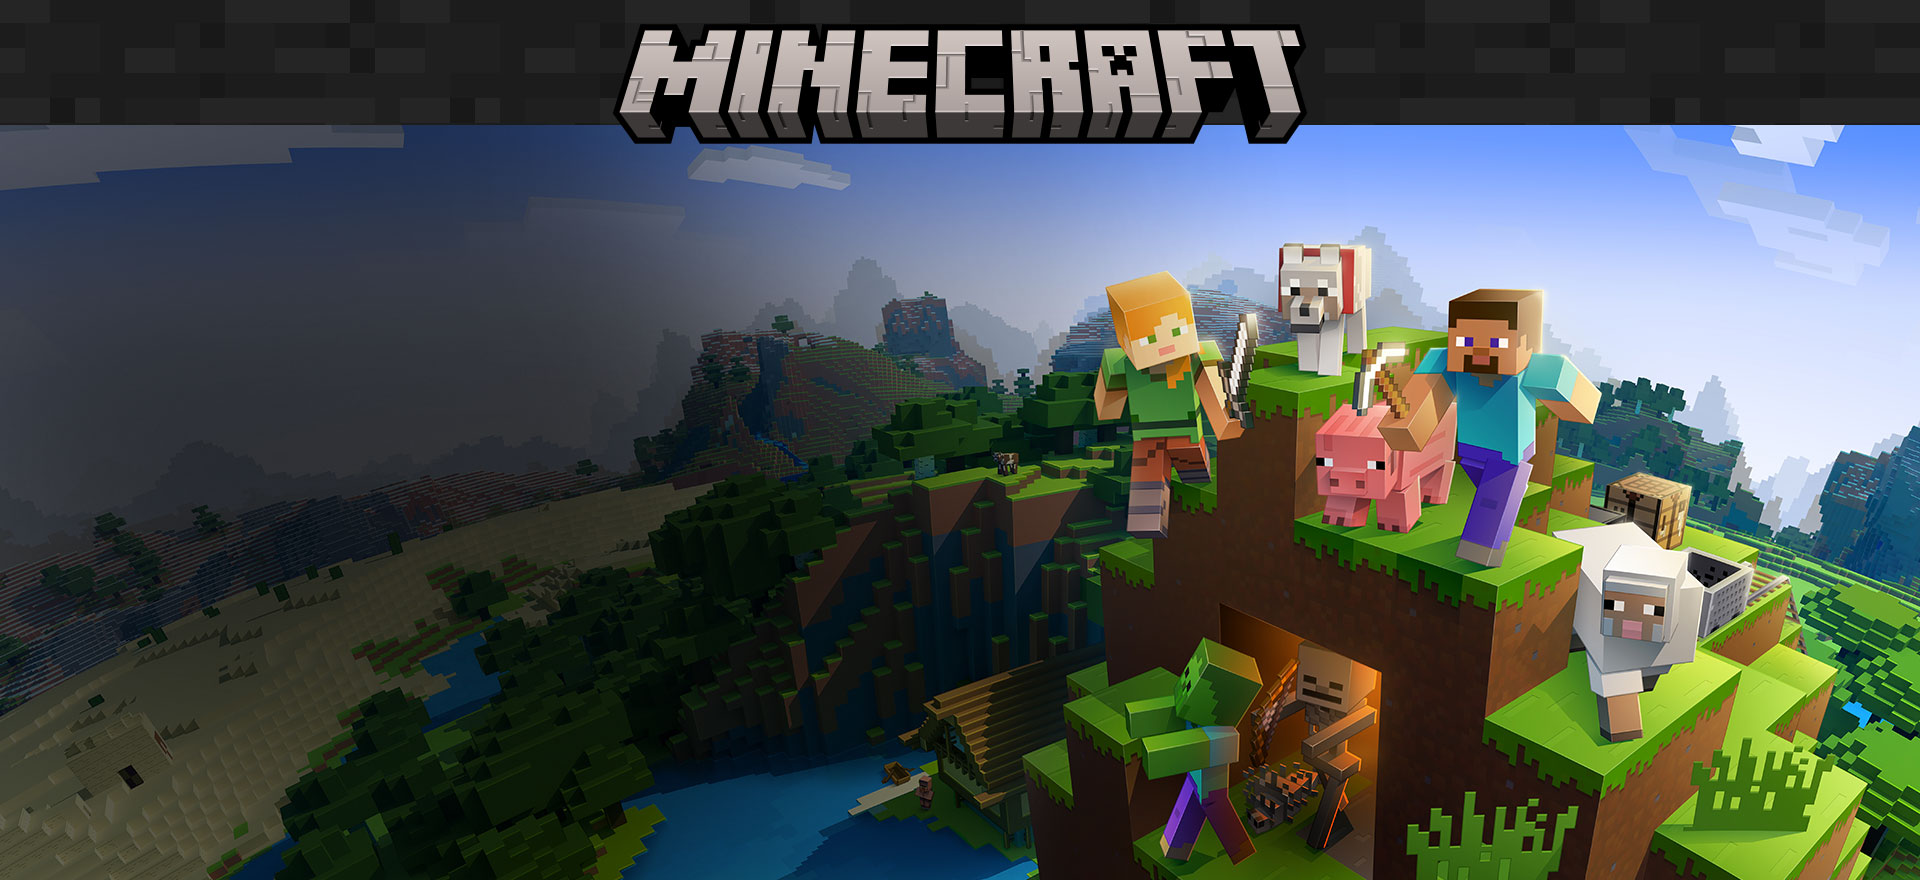 Логотип Minecraft с игровыми персонажами на фоне окружающего мира из блоков